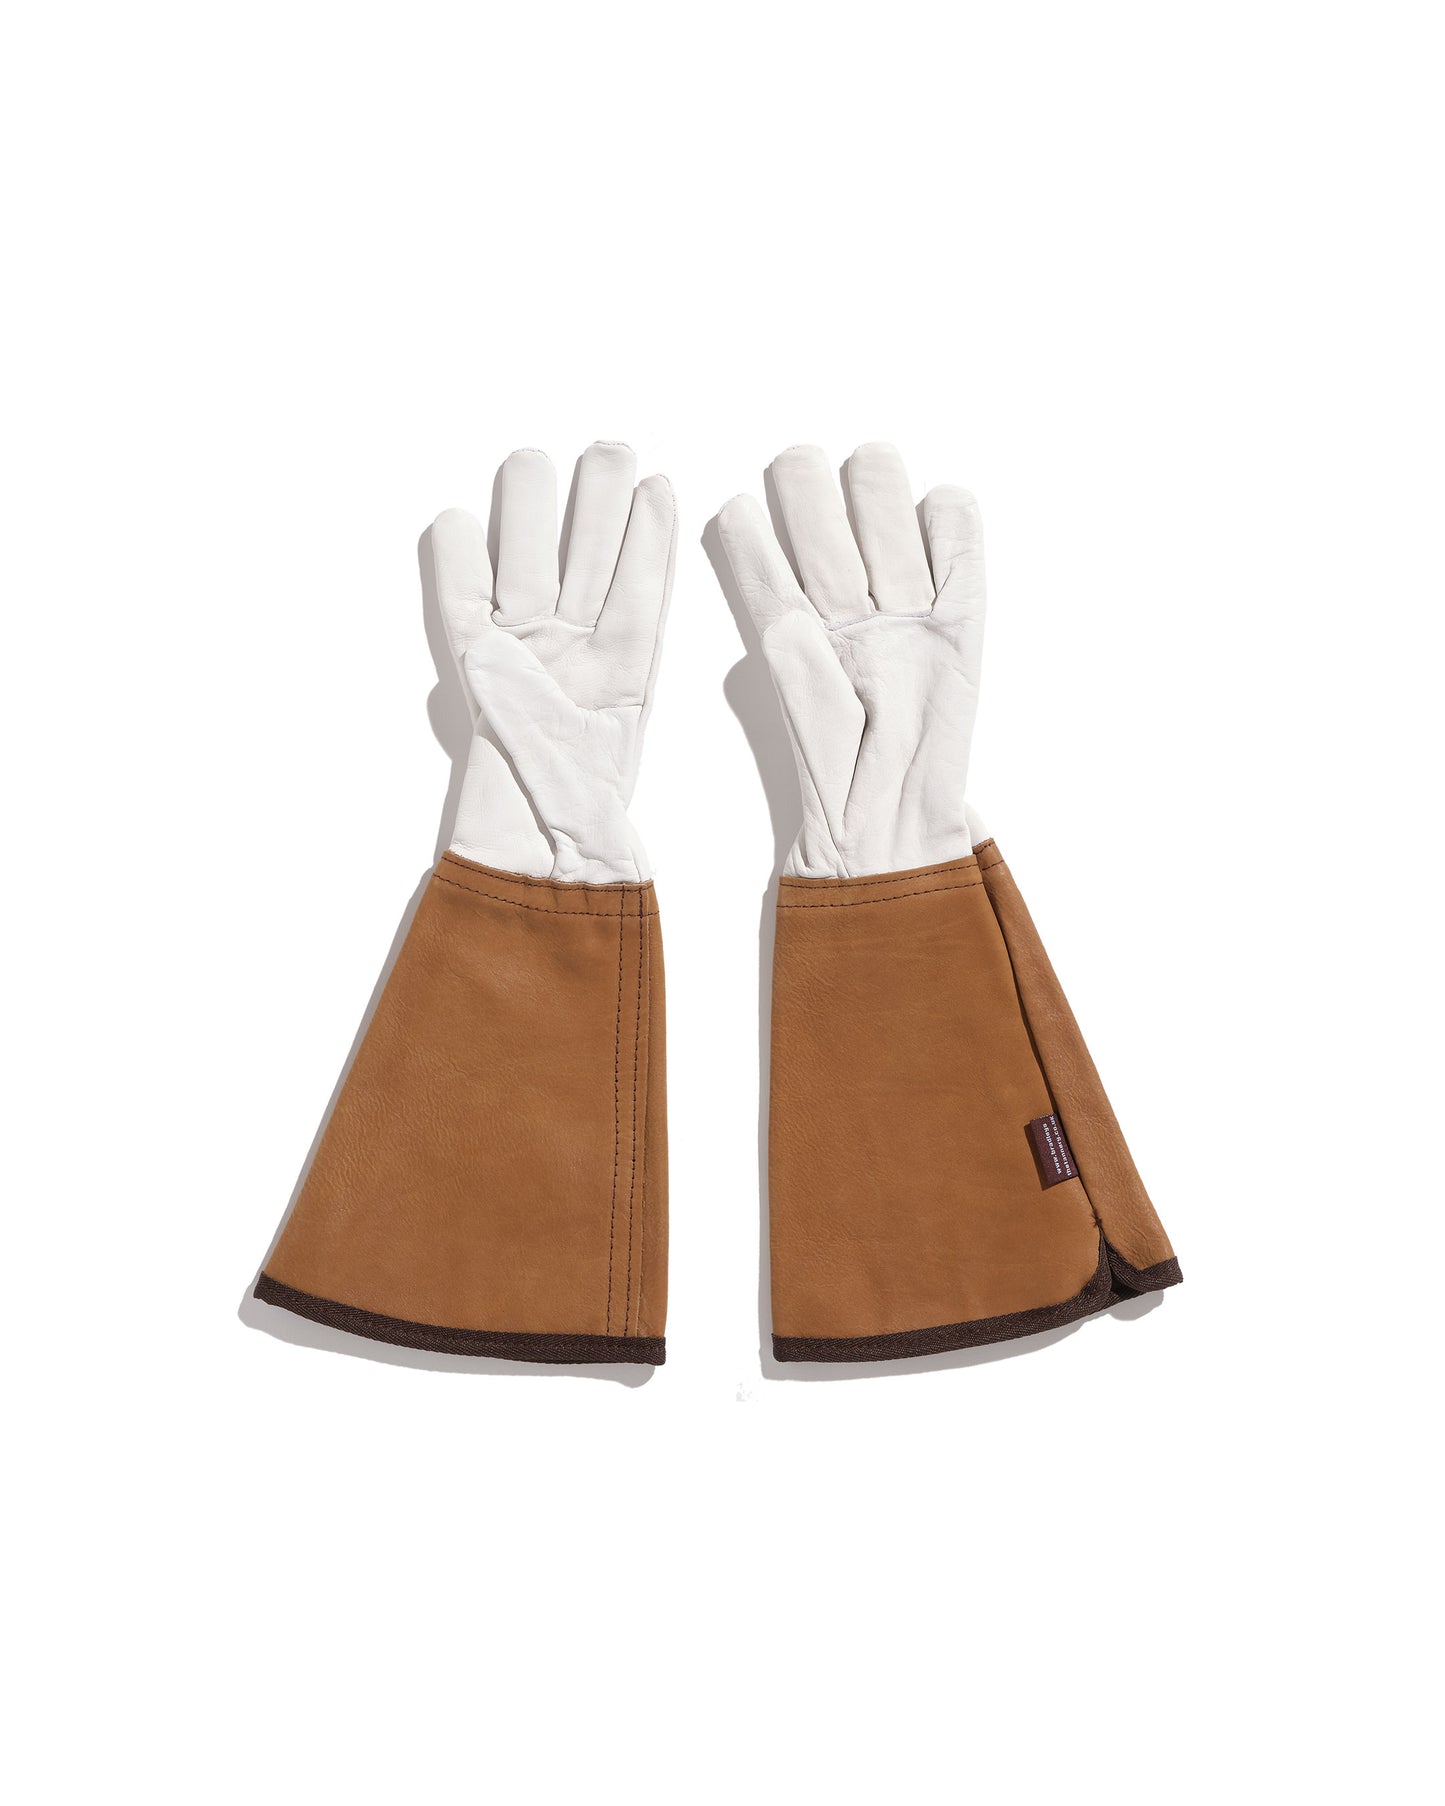 Longs gants de jardinage en cuir épais